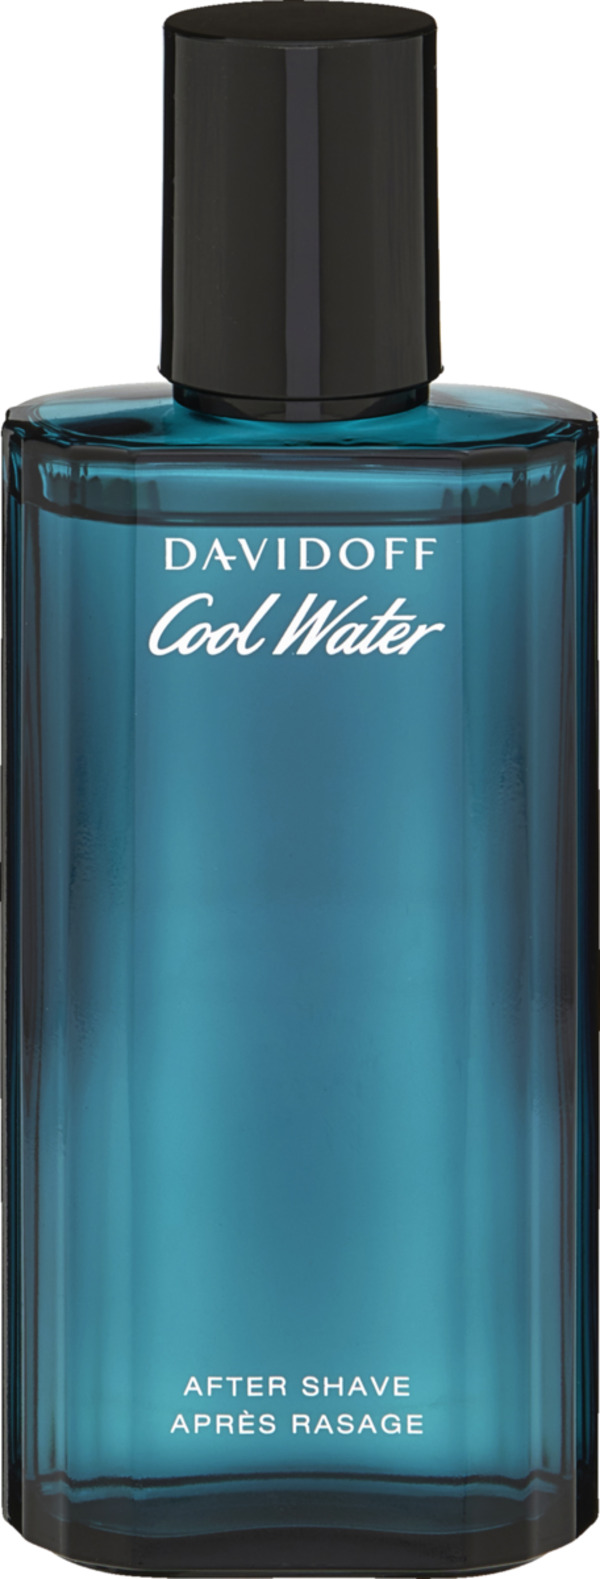 Bild 1 von Davidoff Cool Water, After Shave 75 ml